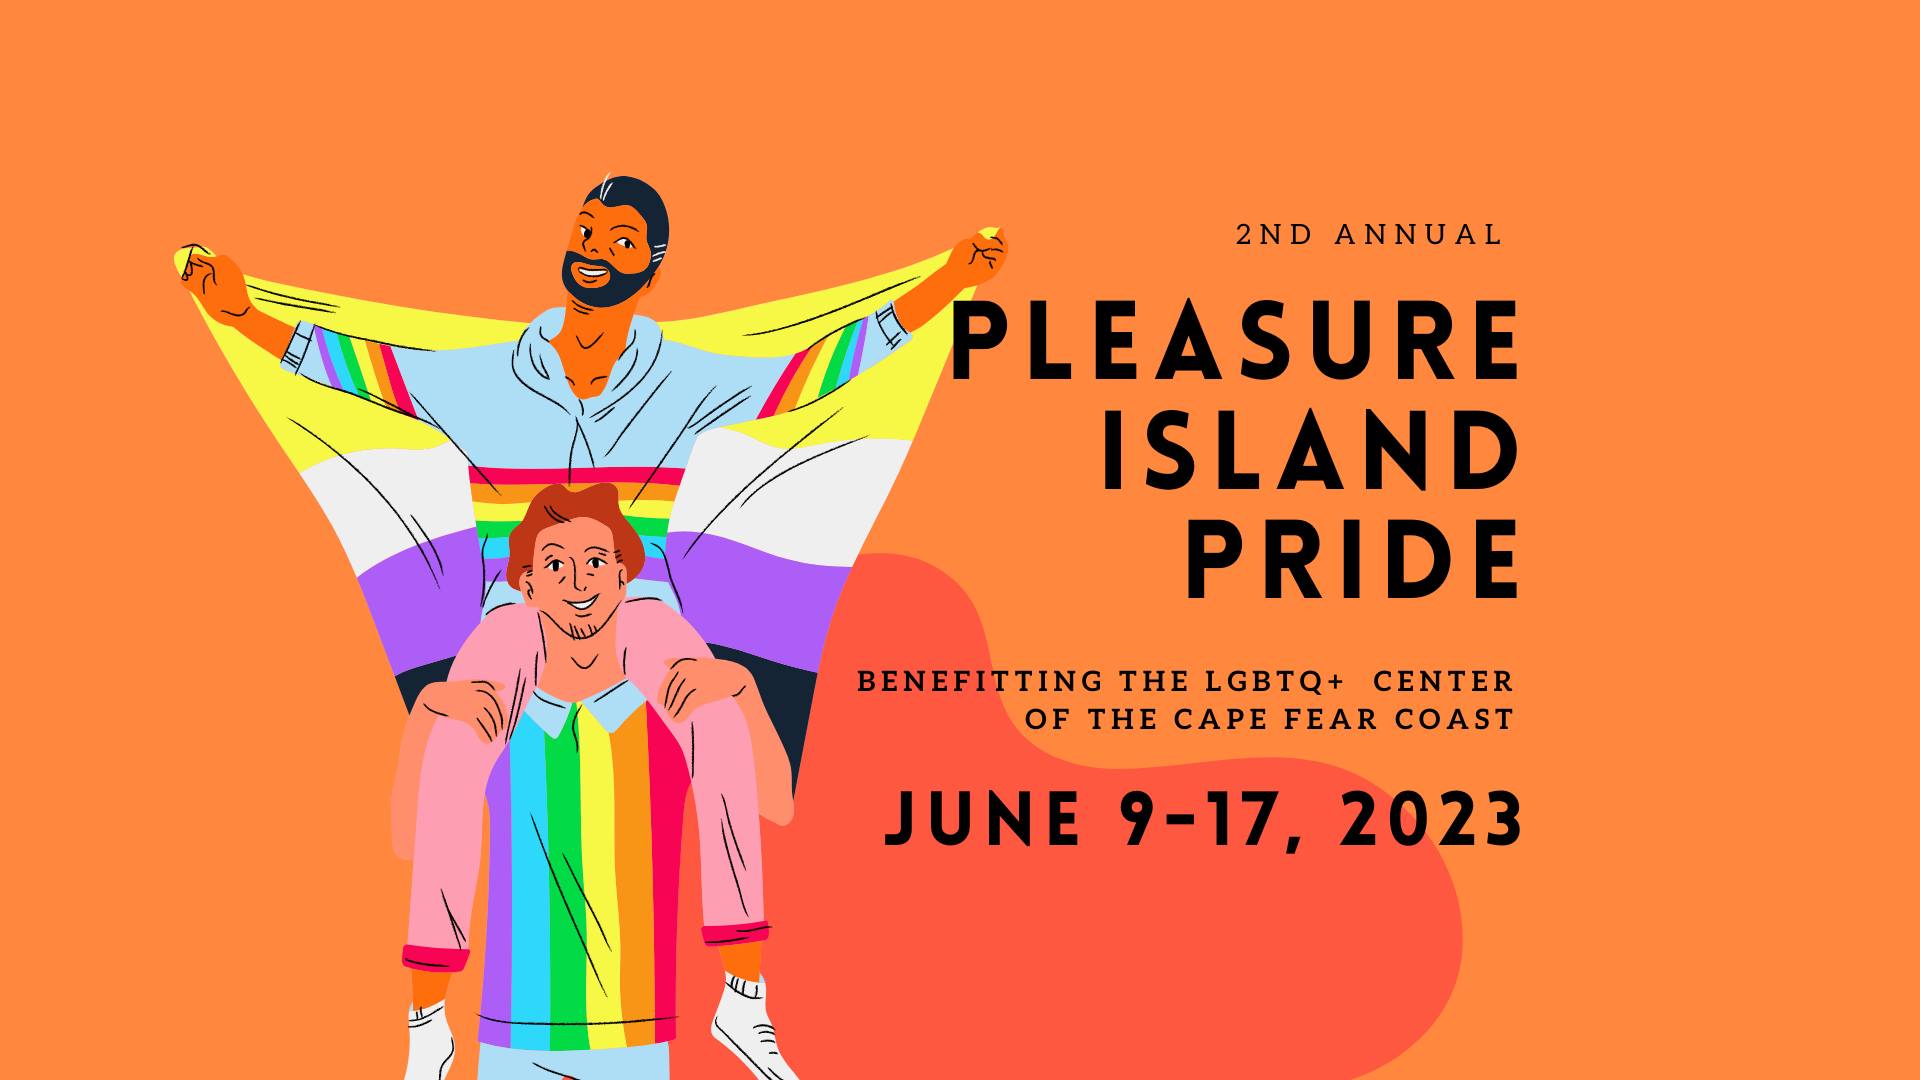 Graphic for the 2nd annual Pleasure Island Pride celebration.